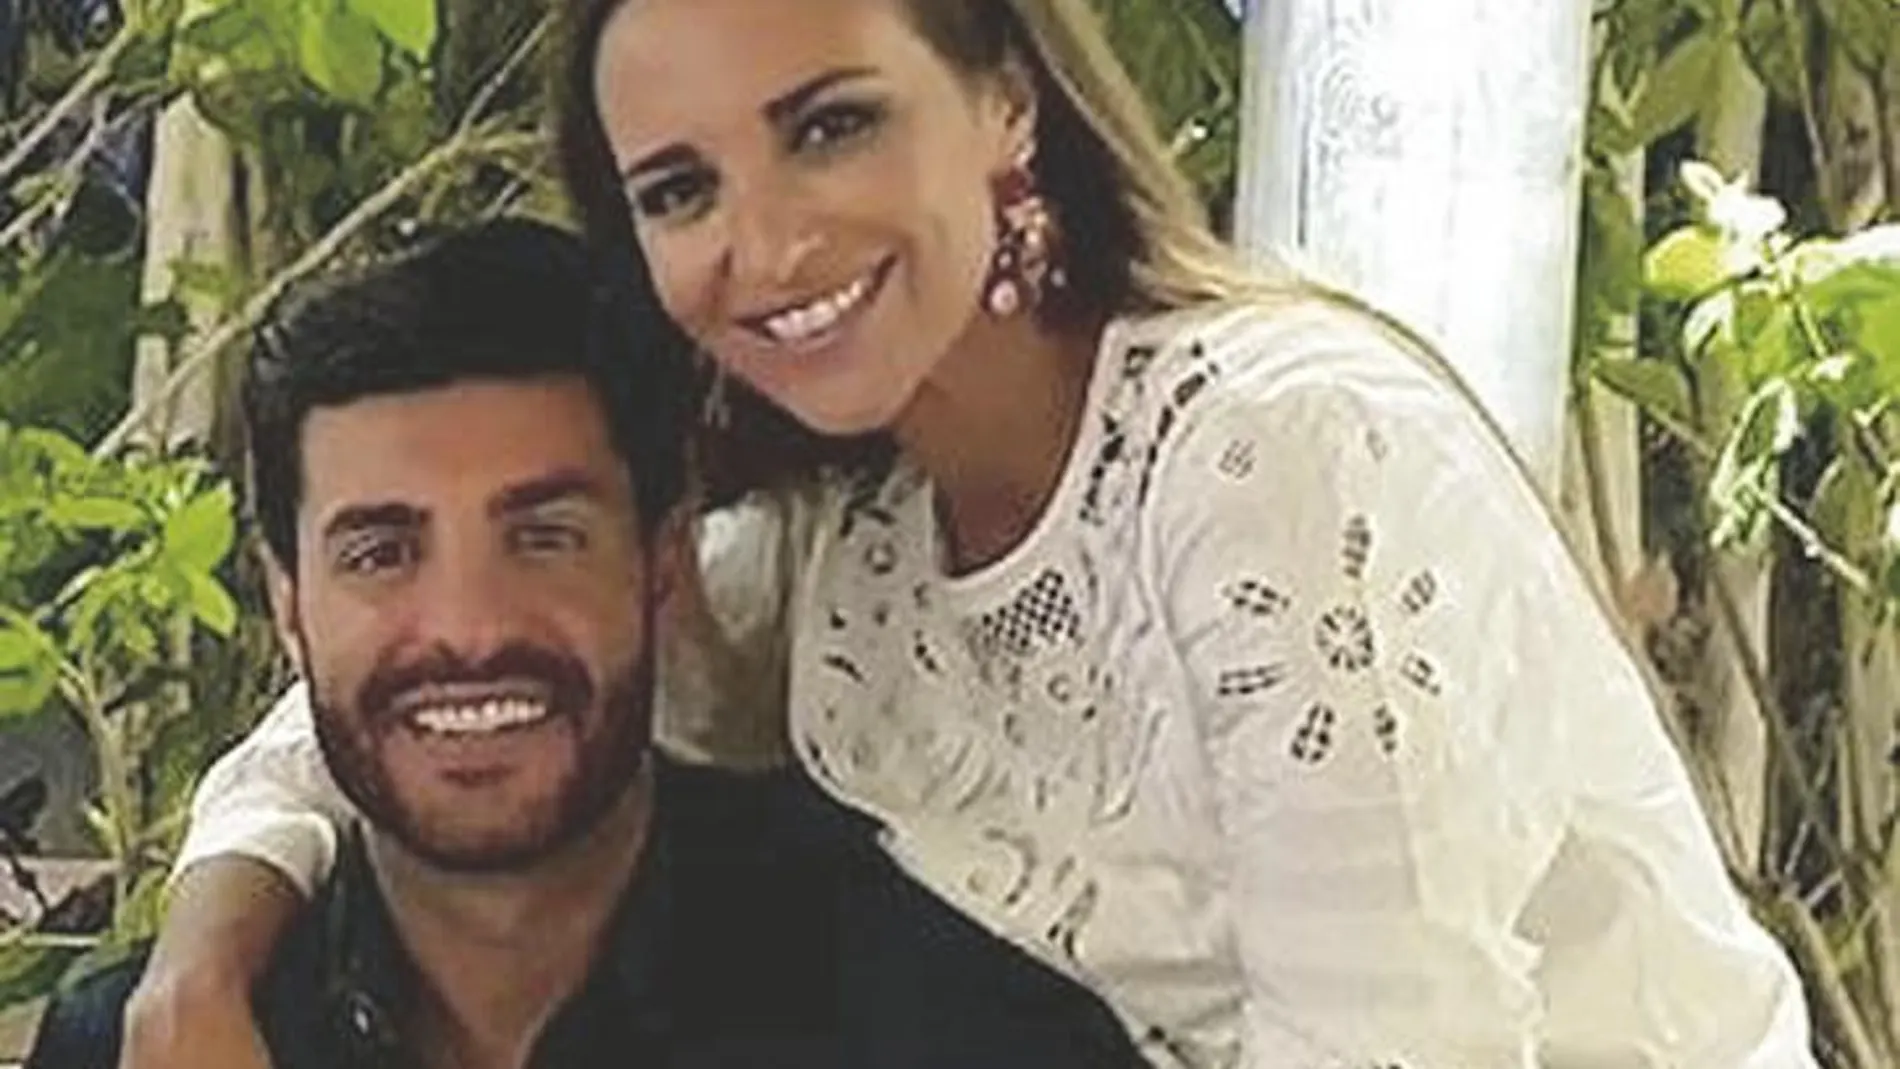 Tras separarse de Bustamente, la actriz de 41 años mantiene una relación con el futbolista Miguel Torres, de 32 (ambos en la imagen), con quien en los próximos meses prevé mudarse a su nuevo y exclusivo chalé en Madrid